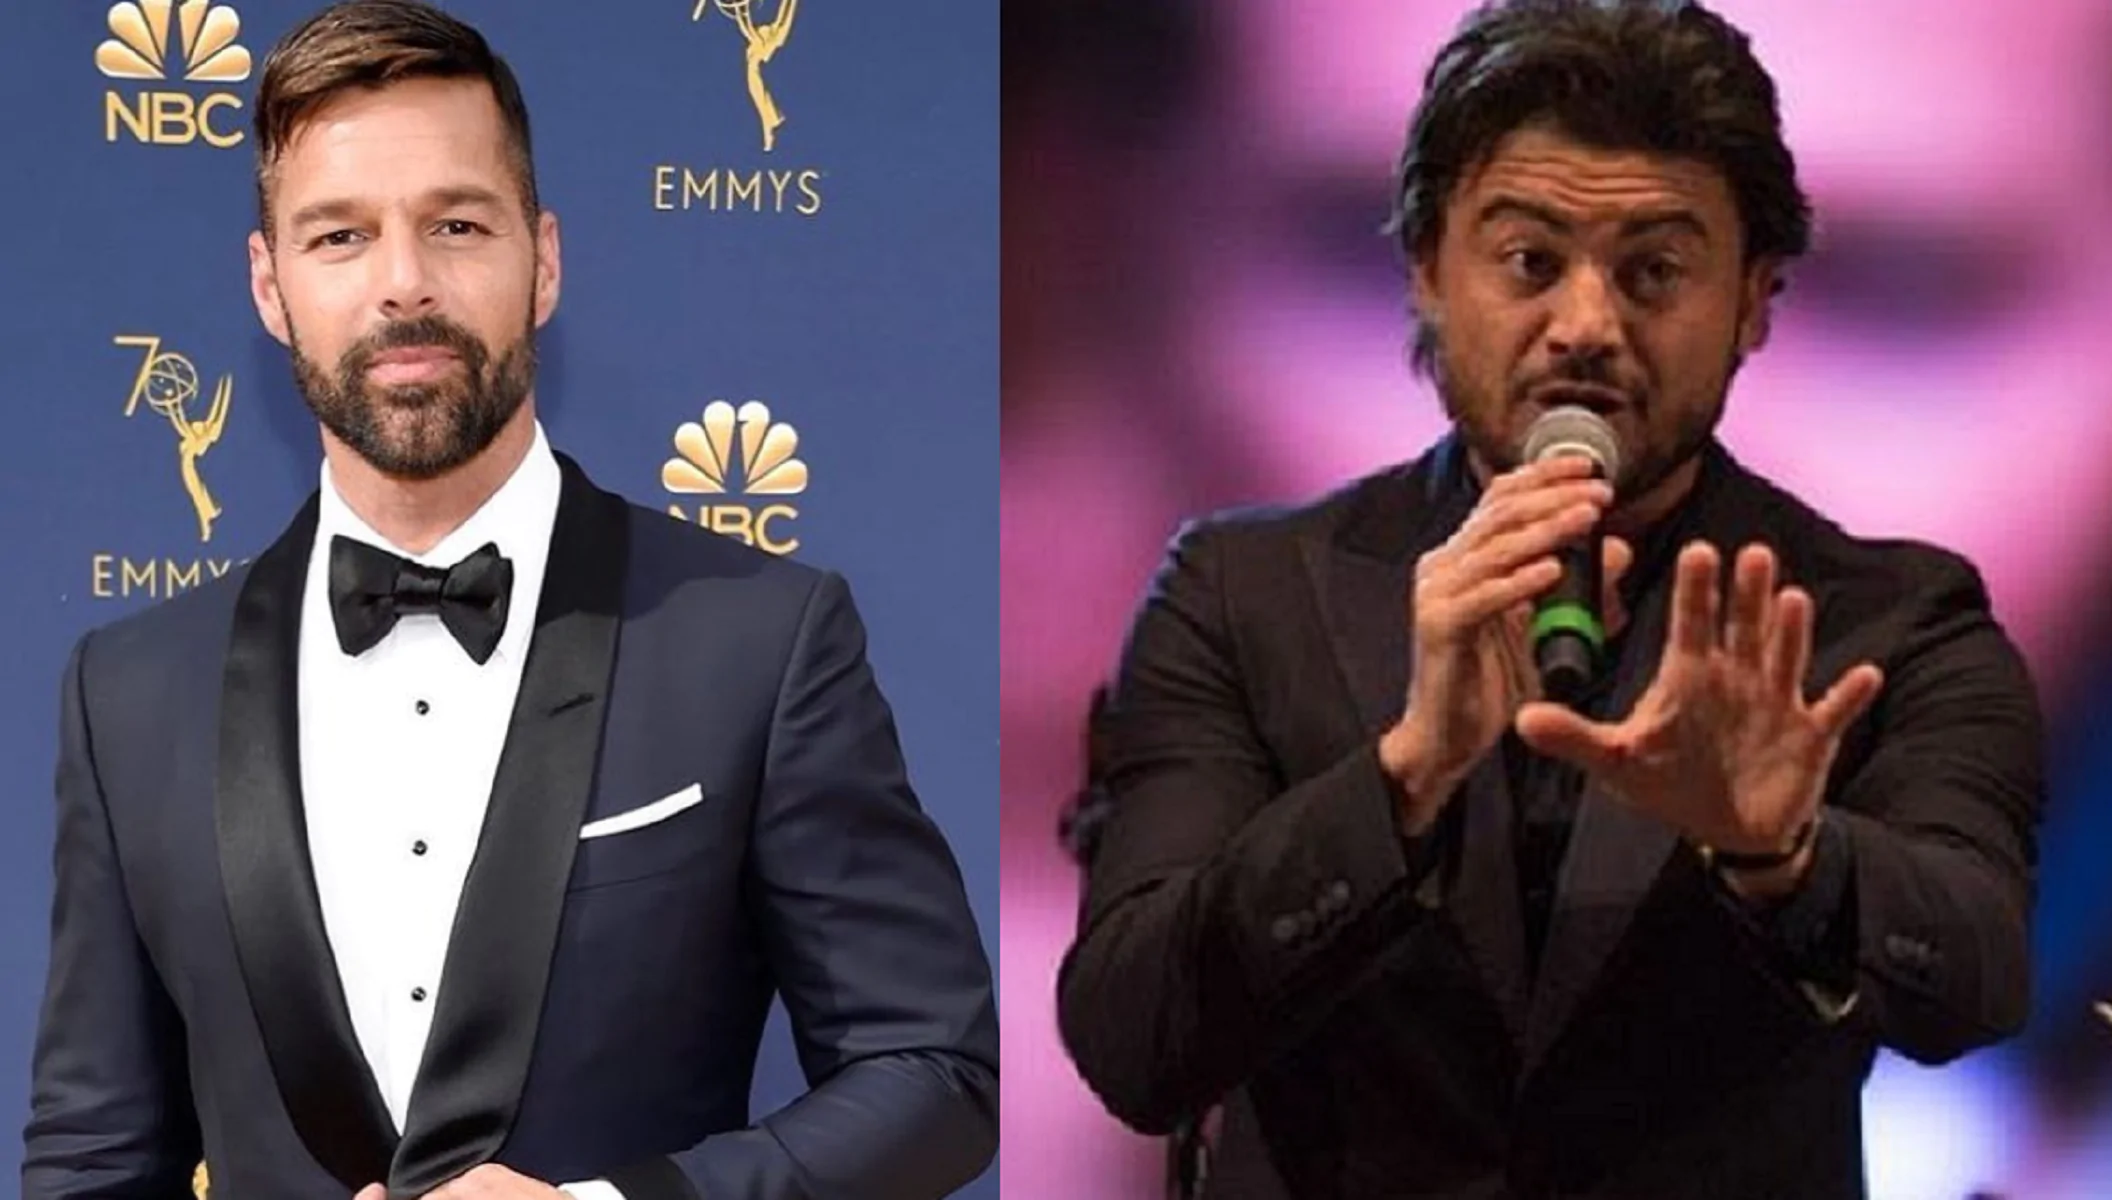 Amici, Ricky Martin e Vittorio Grigolo si lanciano frecciatine